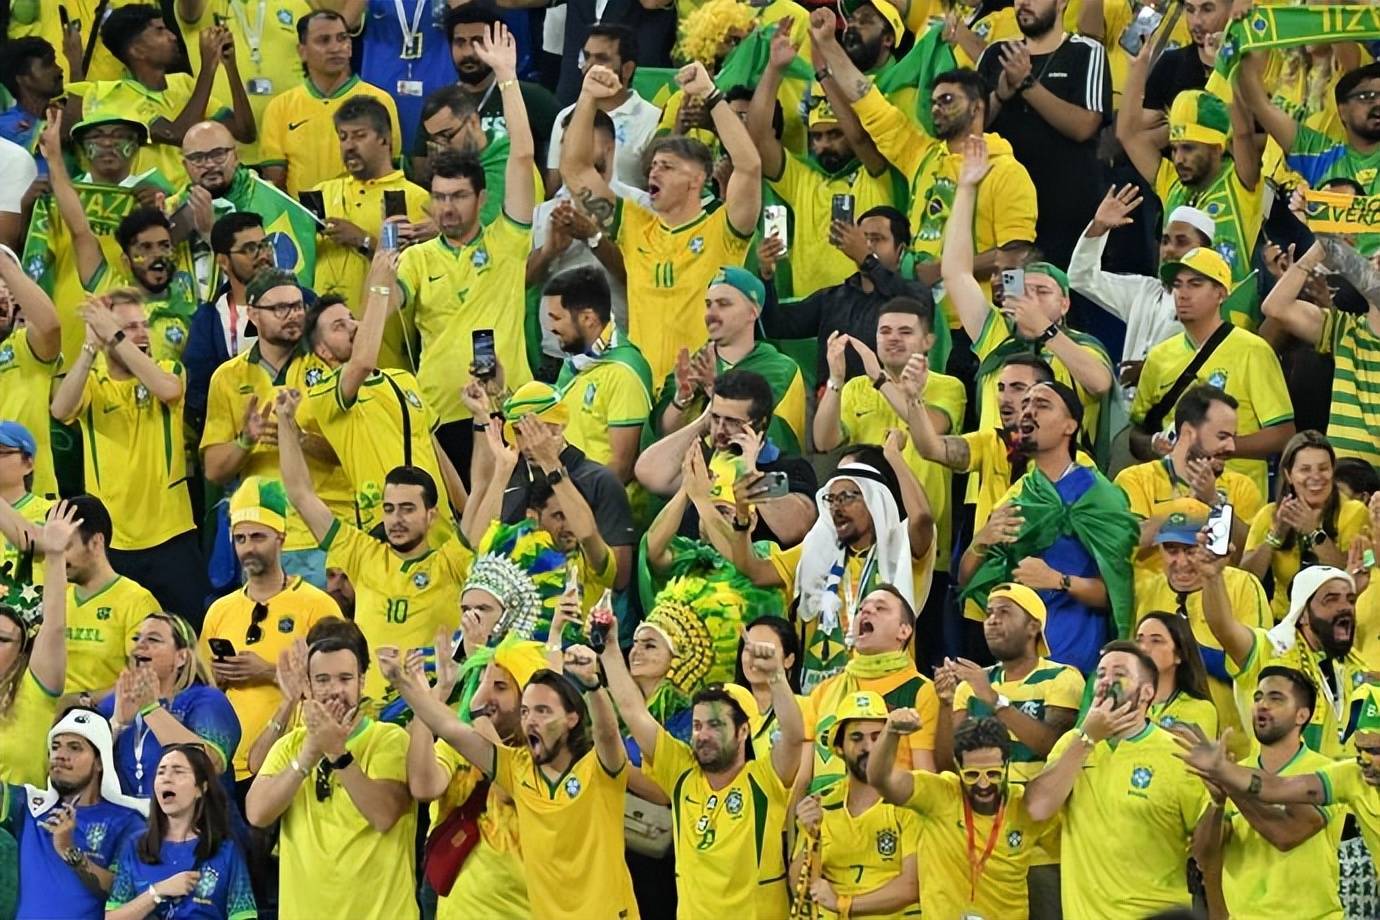 巴西球迷购买了70%的门票,韩国媒体紧急喊话以一敌百:200人造就2